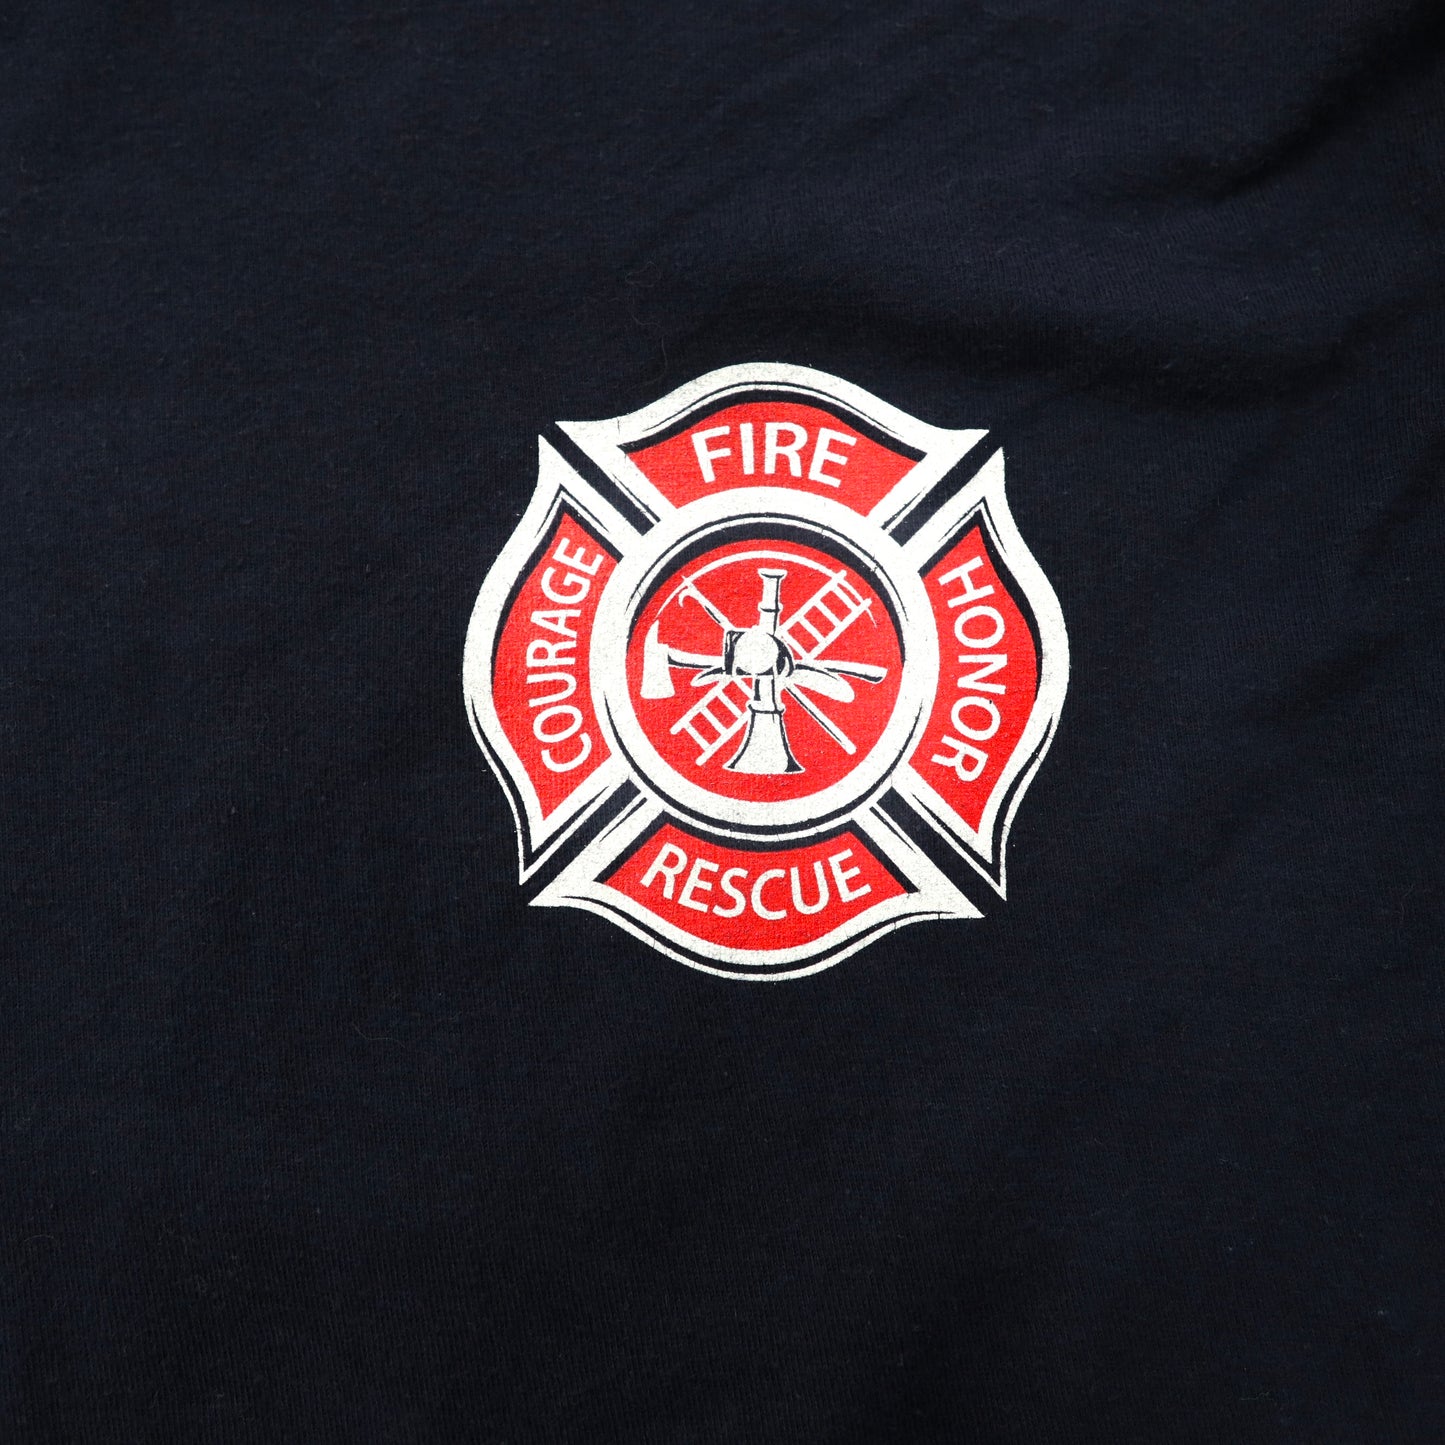 ann aranr プリントTシャツ XL ネイビー コットン 星条旗 Fire & Rescue Maltese Cross Firefighter Fire Courage Honor メキシコ製